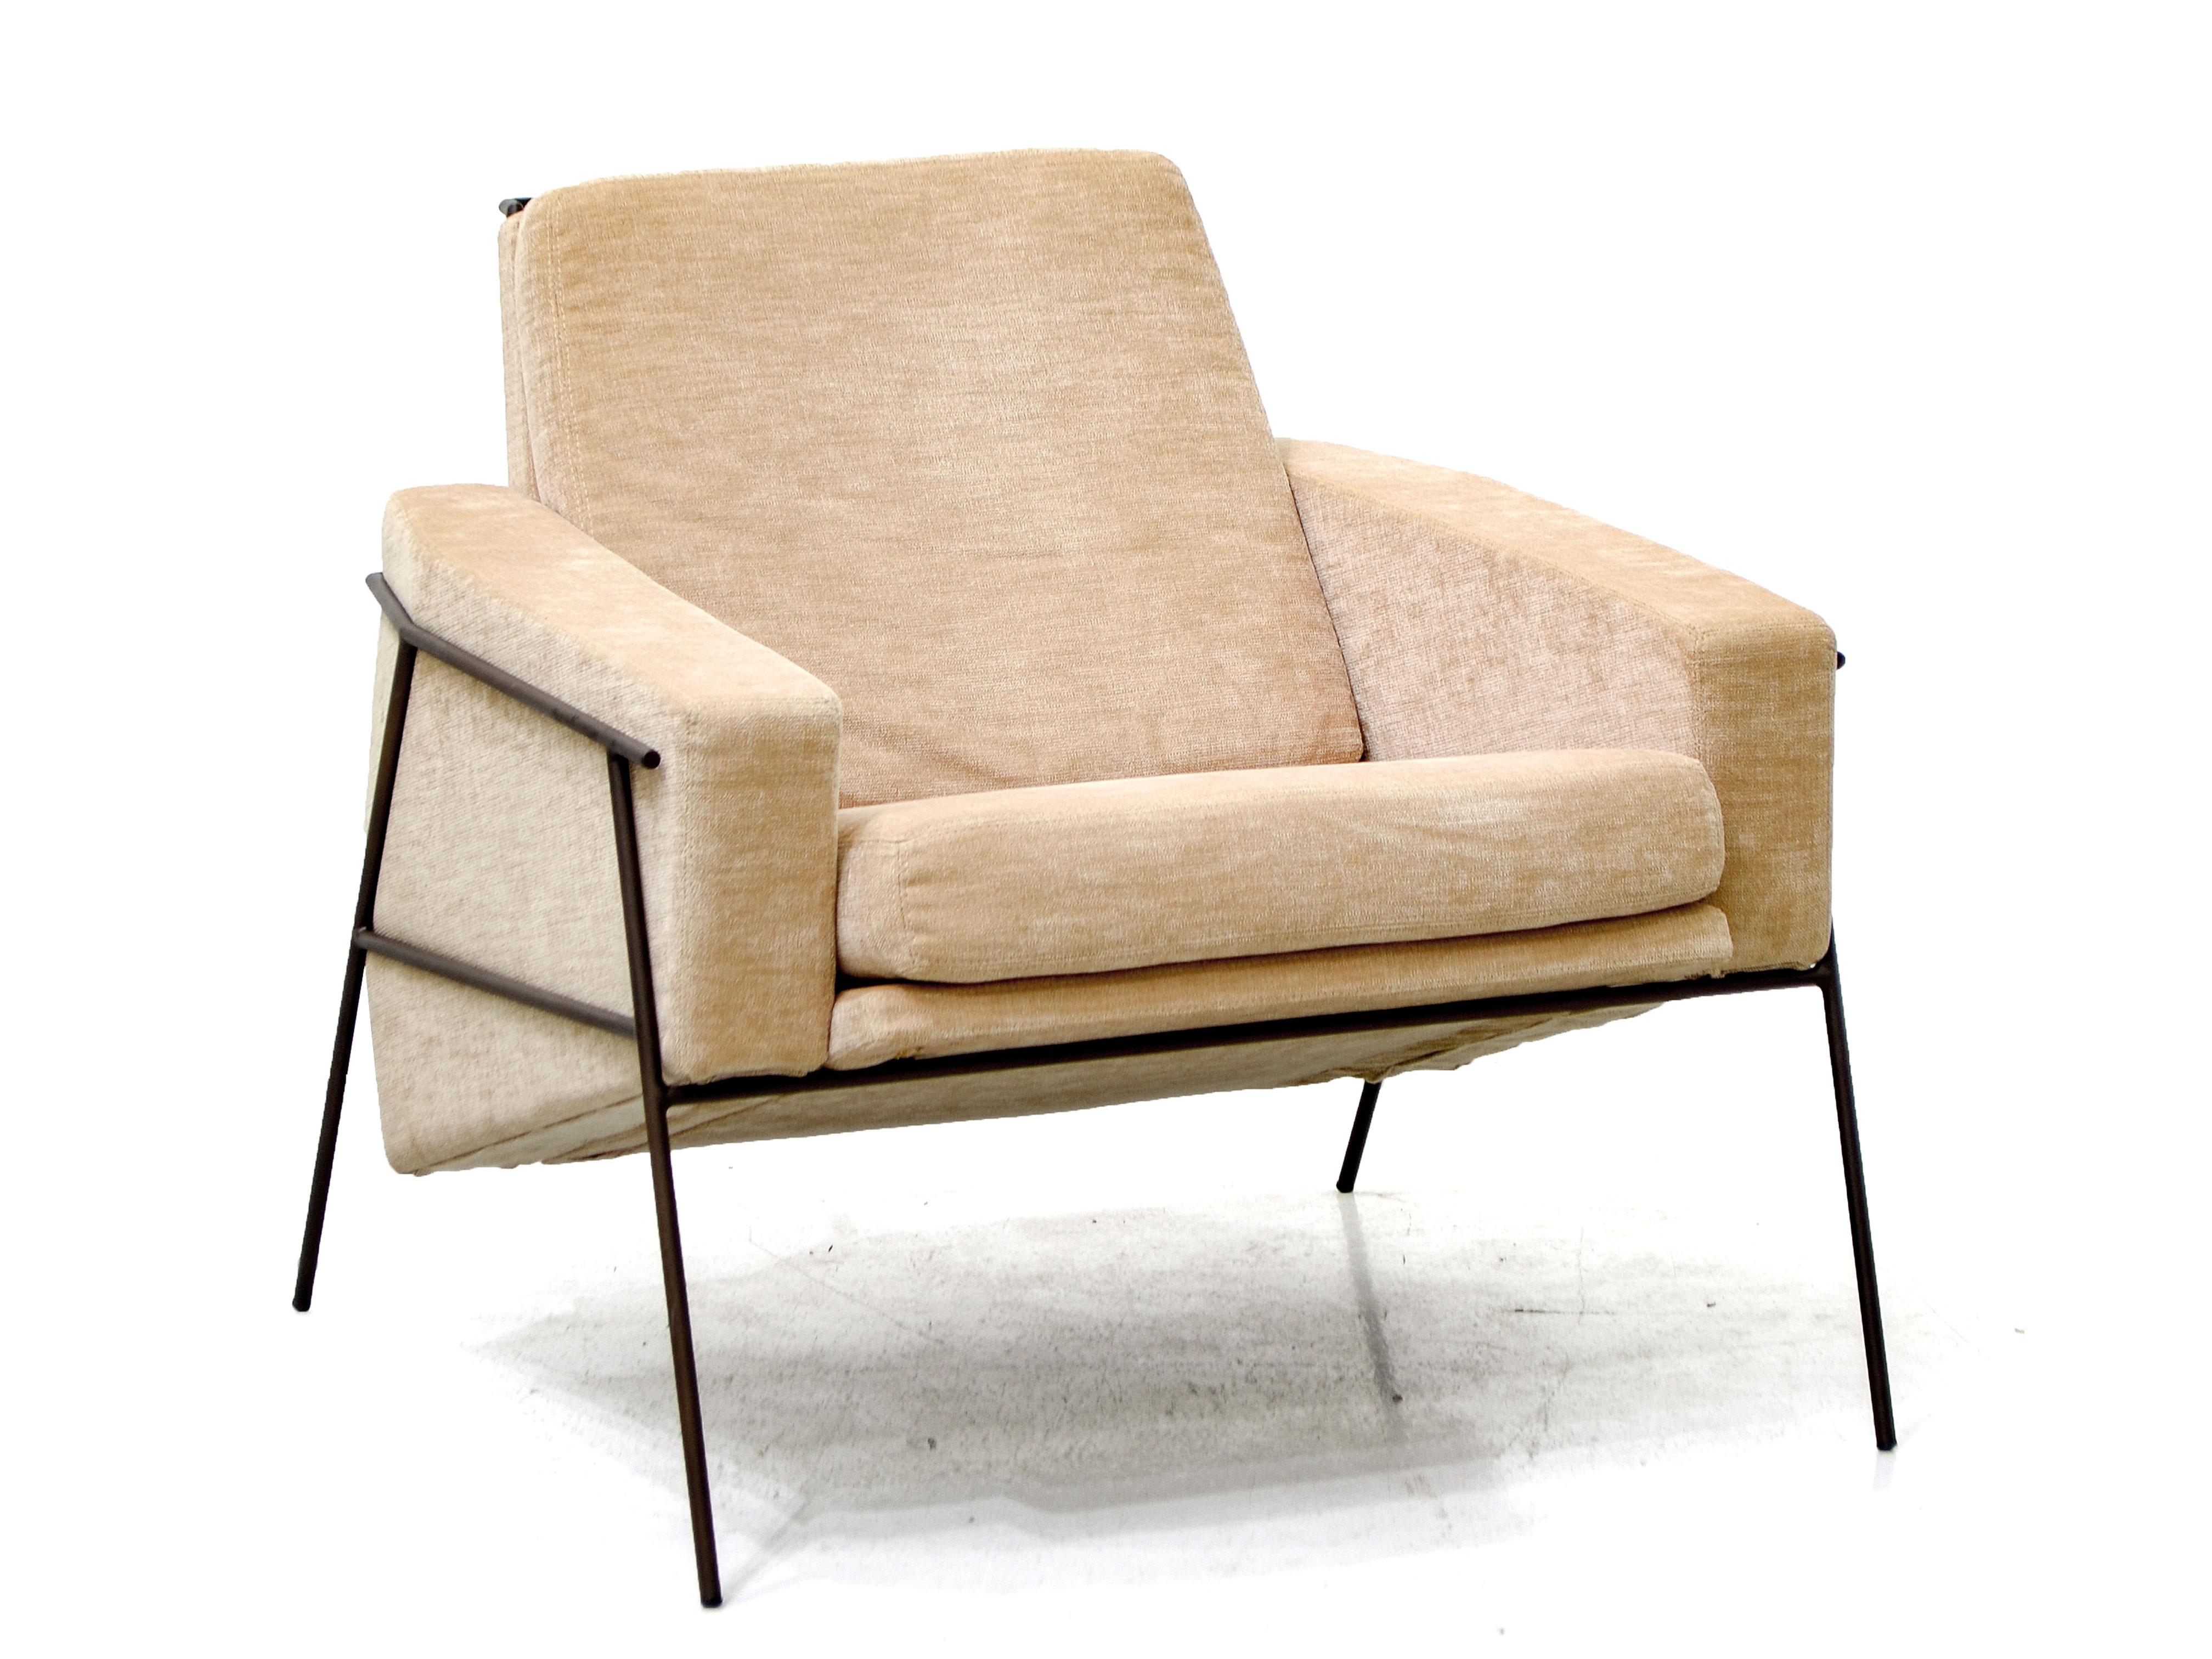 Réalisé en acier peint, ce beau fauteuil, simple et élégant, peut être garni de différentes options de tissus ou de cuir.

Ce fauteuil peut également être vendu sans le pouf qui l'accompagne.

Zanini de Zanine est né à Rio de Janeiro, en 1978.